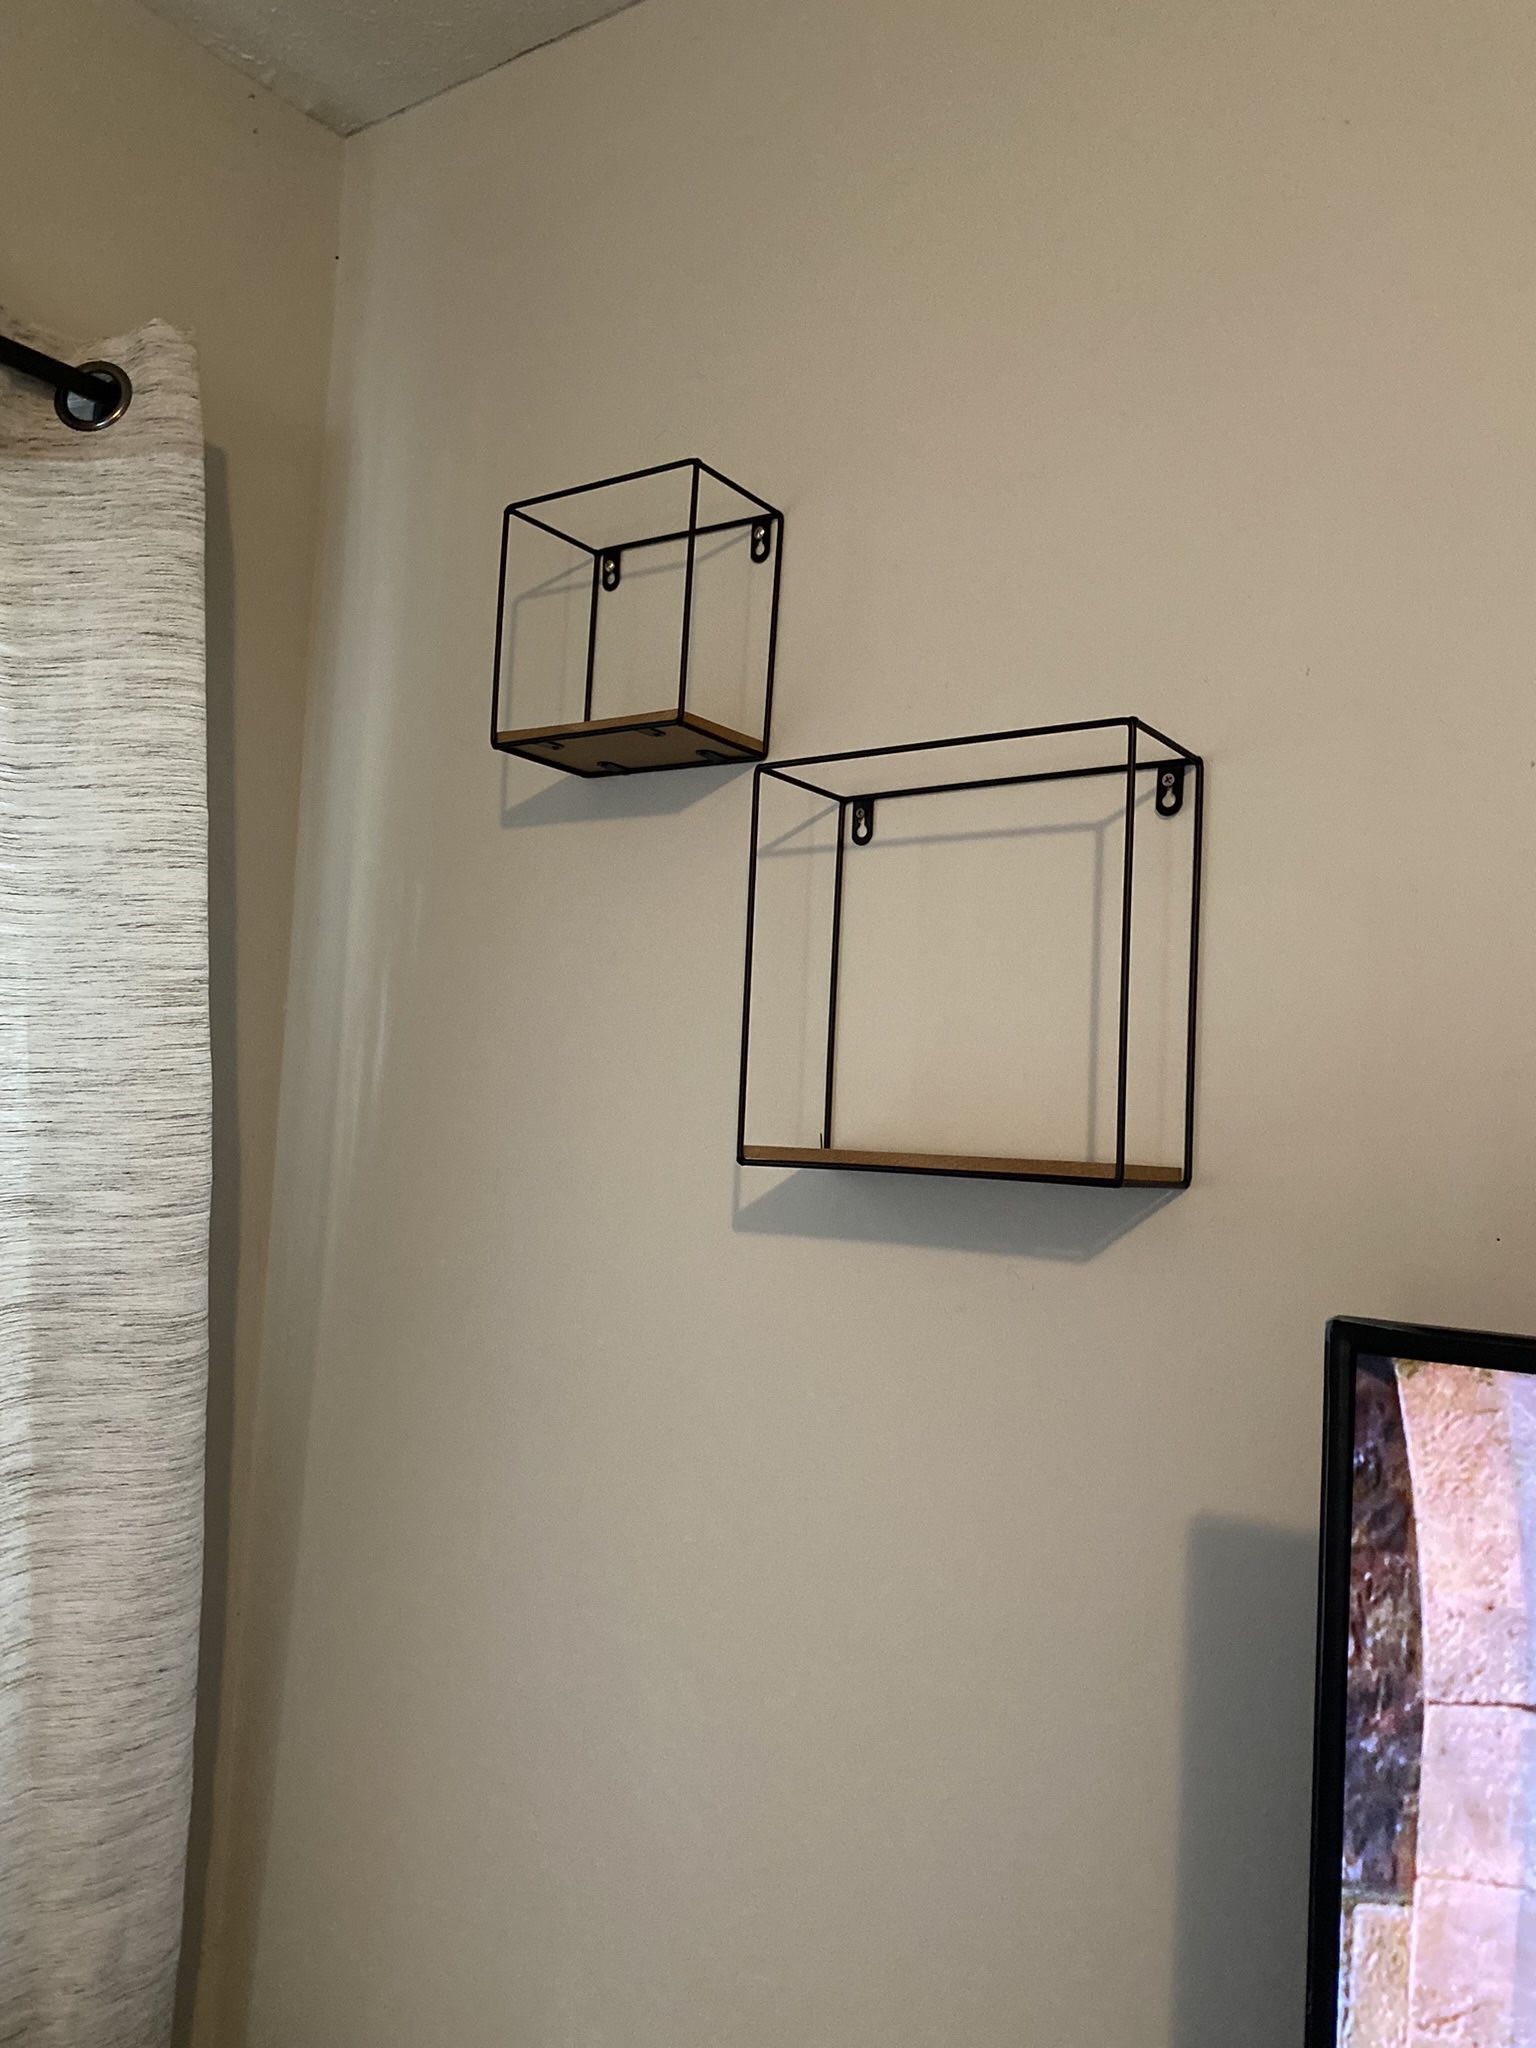 Hanging Shelves, Key Holder, & Picture Frames